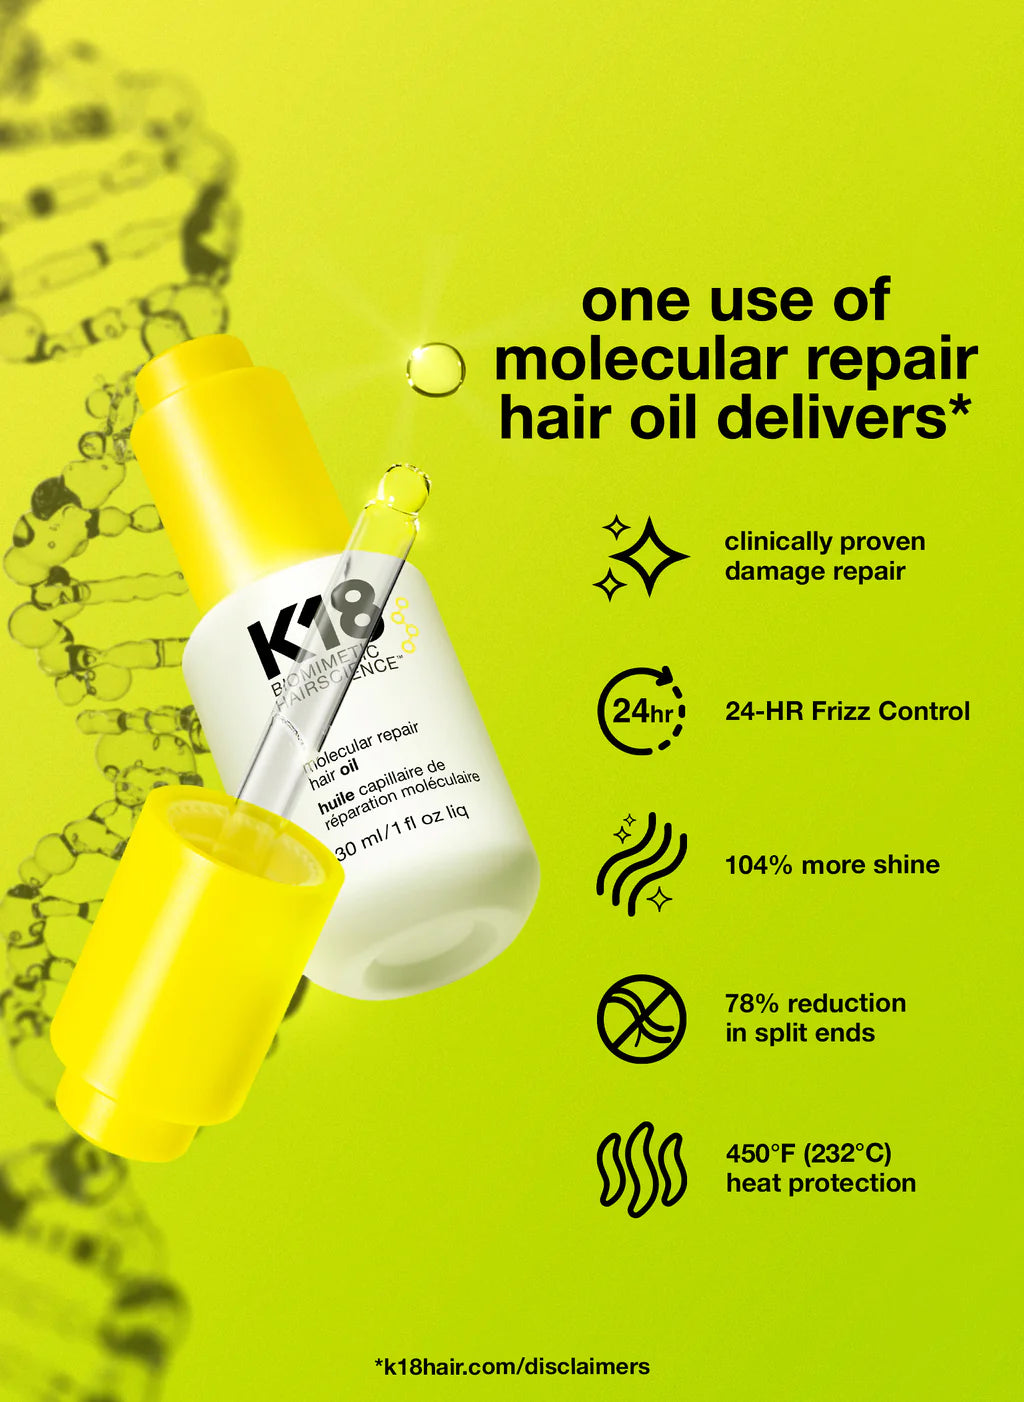 K18 Molecular Repair Oil